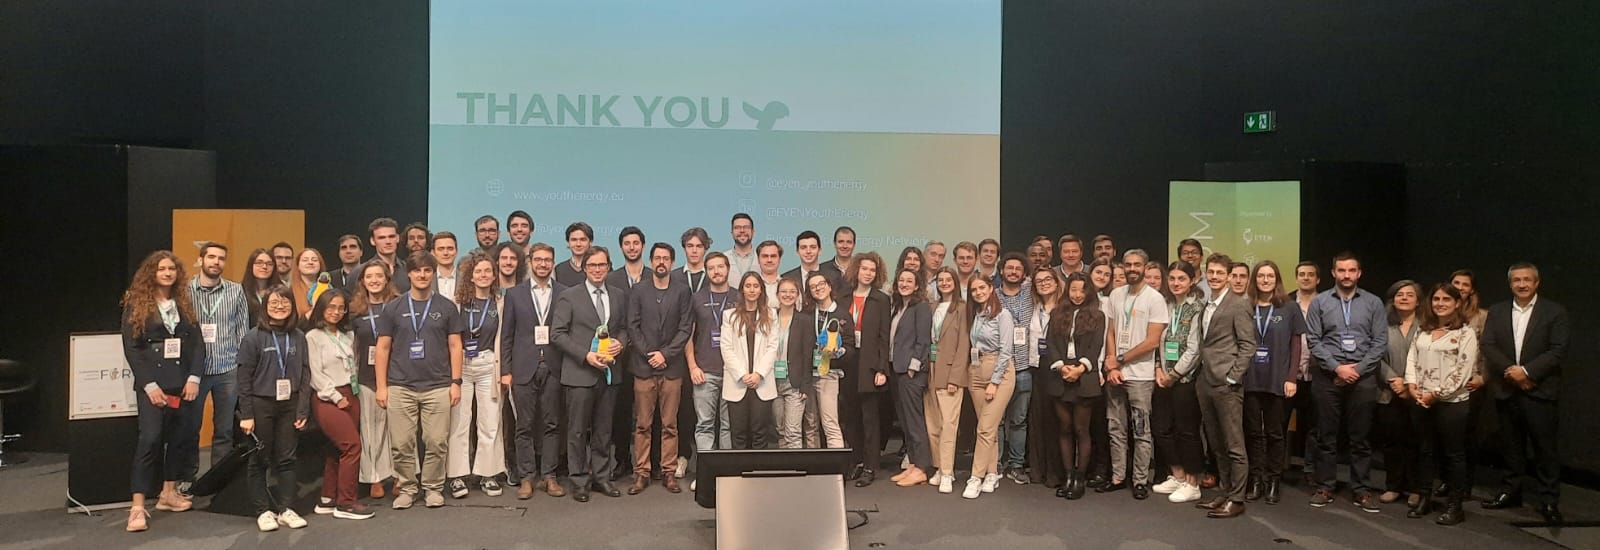 1.º Fórum Europeu de Jovens na Energia chega ao fim com a apresentação de um ‘position paper’ sobre o papel da juventude no futuro da transição energética europeia